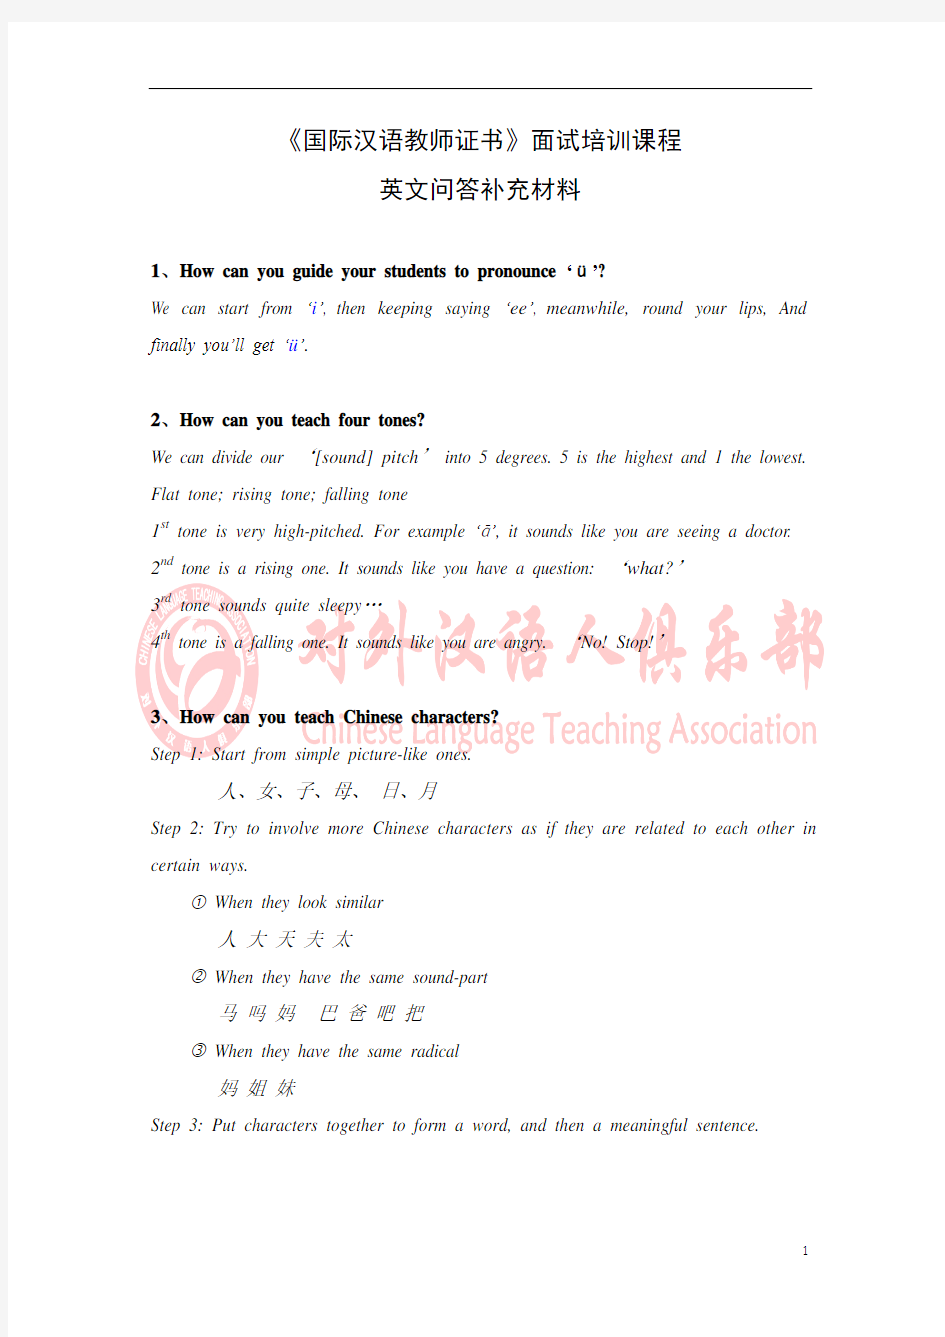 《国际汉语教师证书》面试培训英文问答补充材料